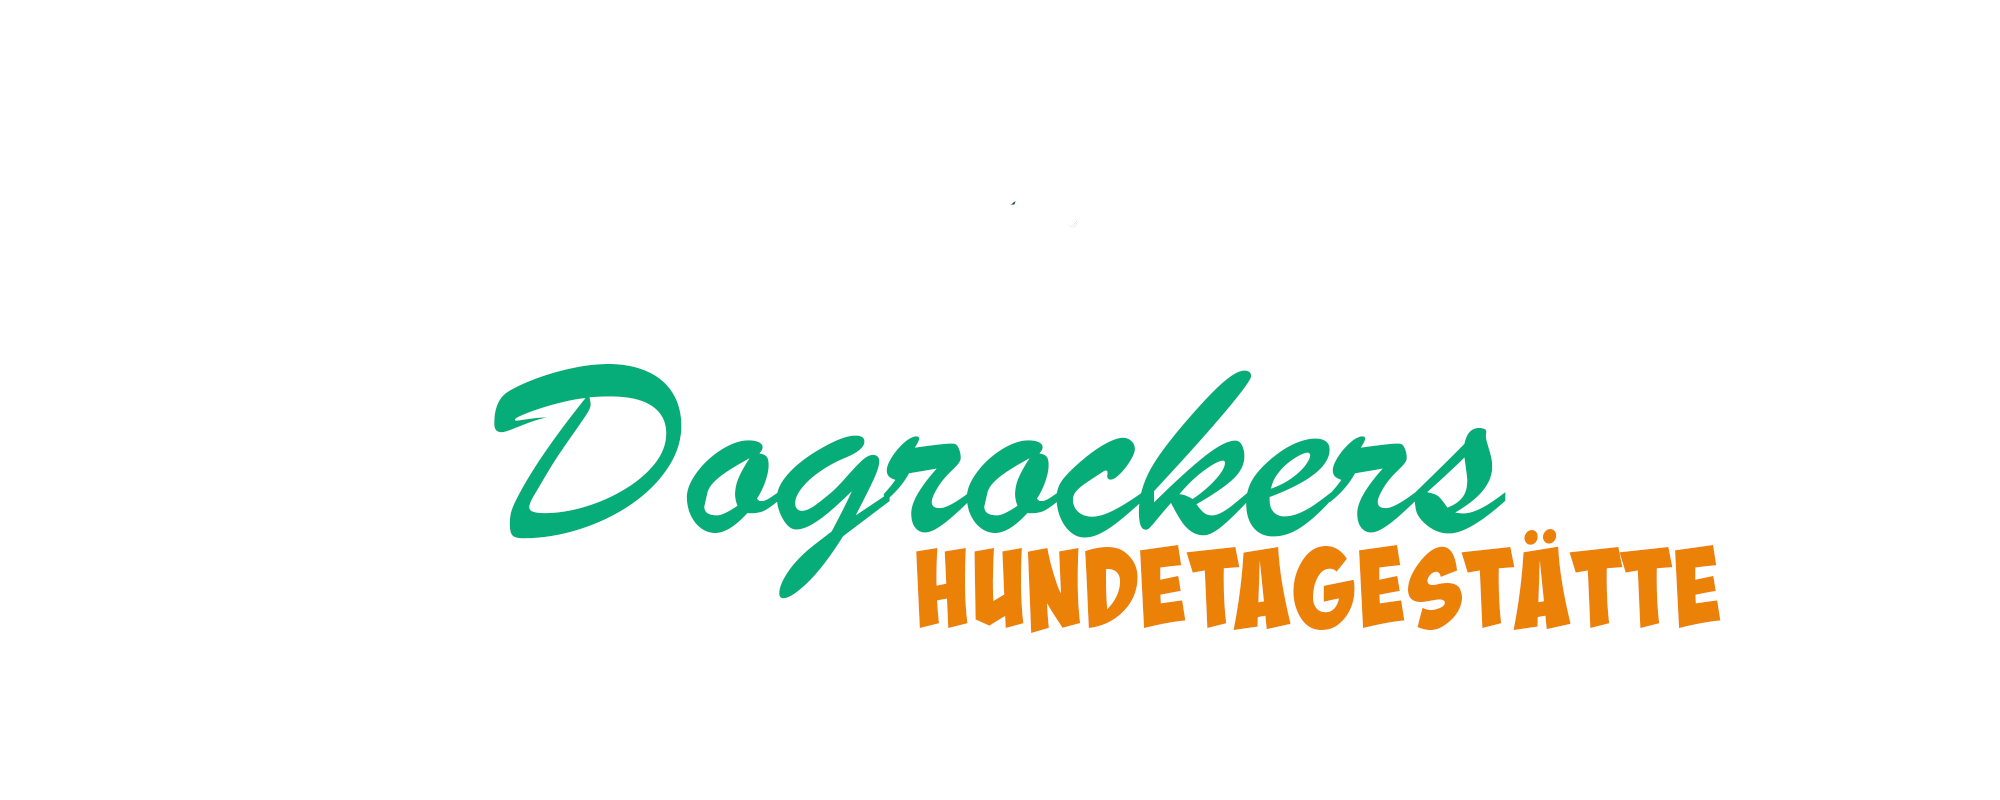 Dogrockers Hundetagestätte